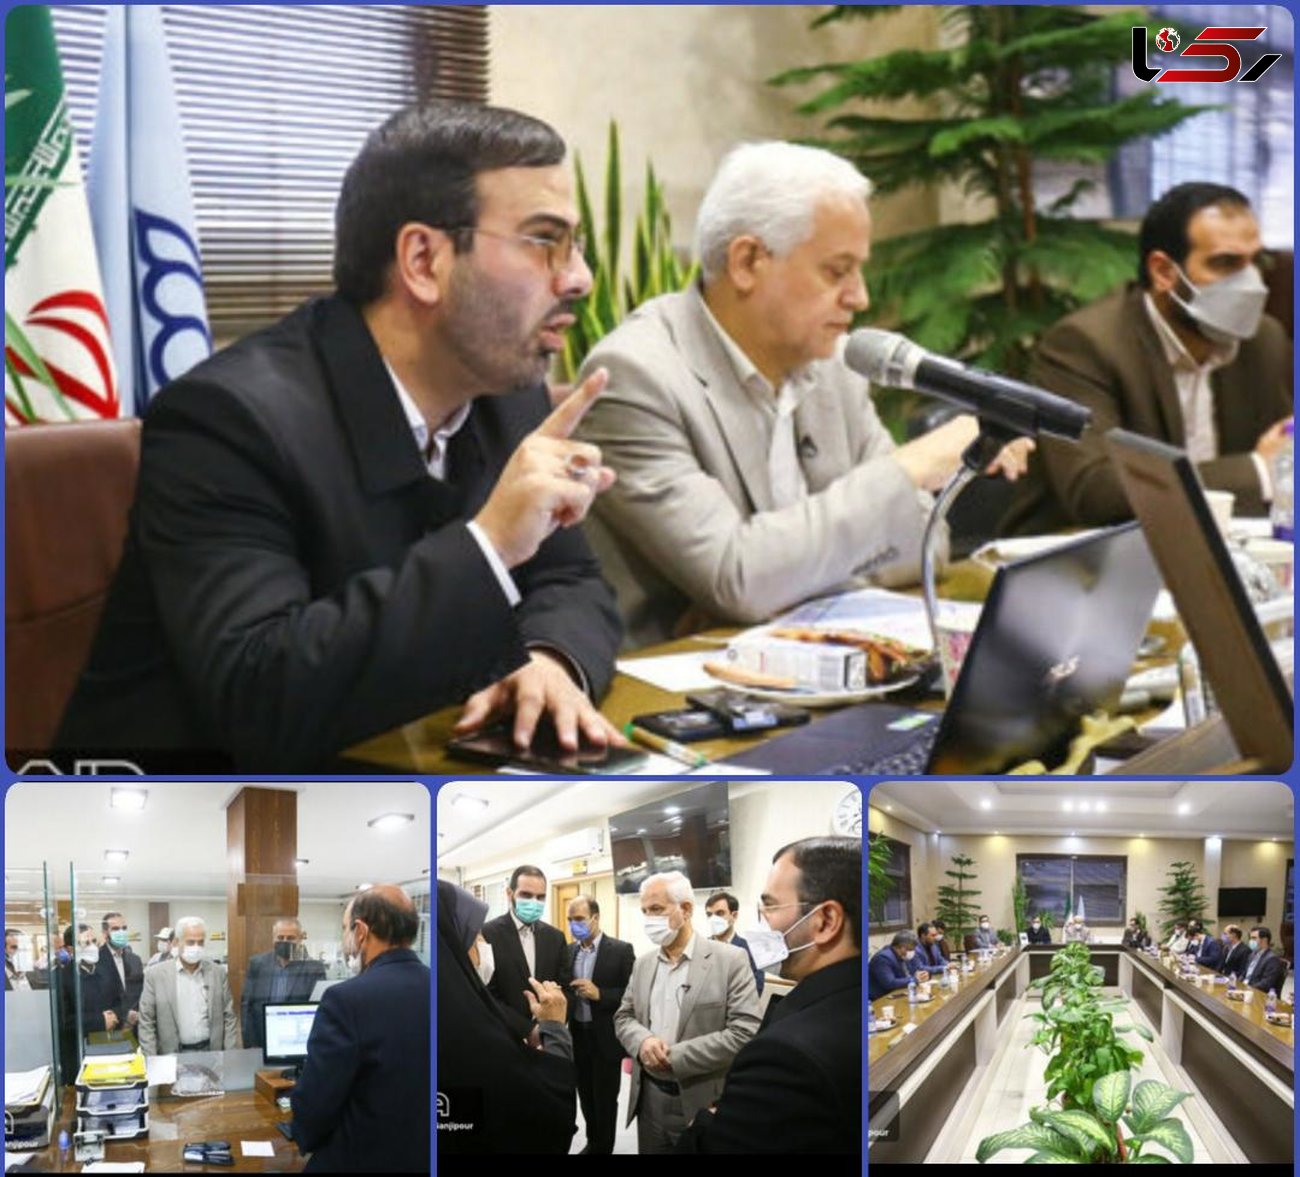 الگوی شهر همگرا در اصفهان پیاده می شود/
تعریف 39 پروژه شاخص و مهم منطقه ای در منطقه 14
